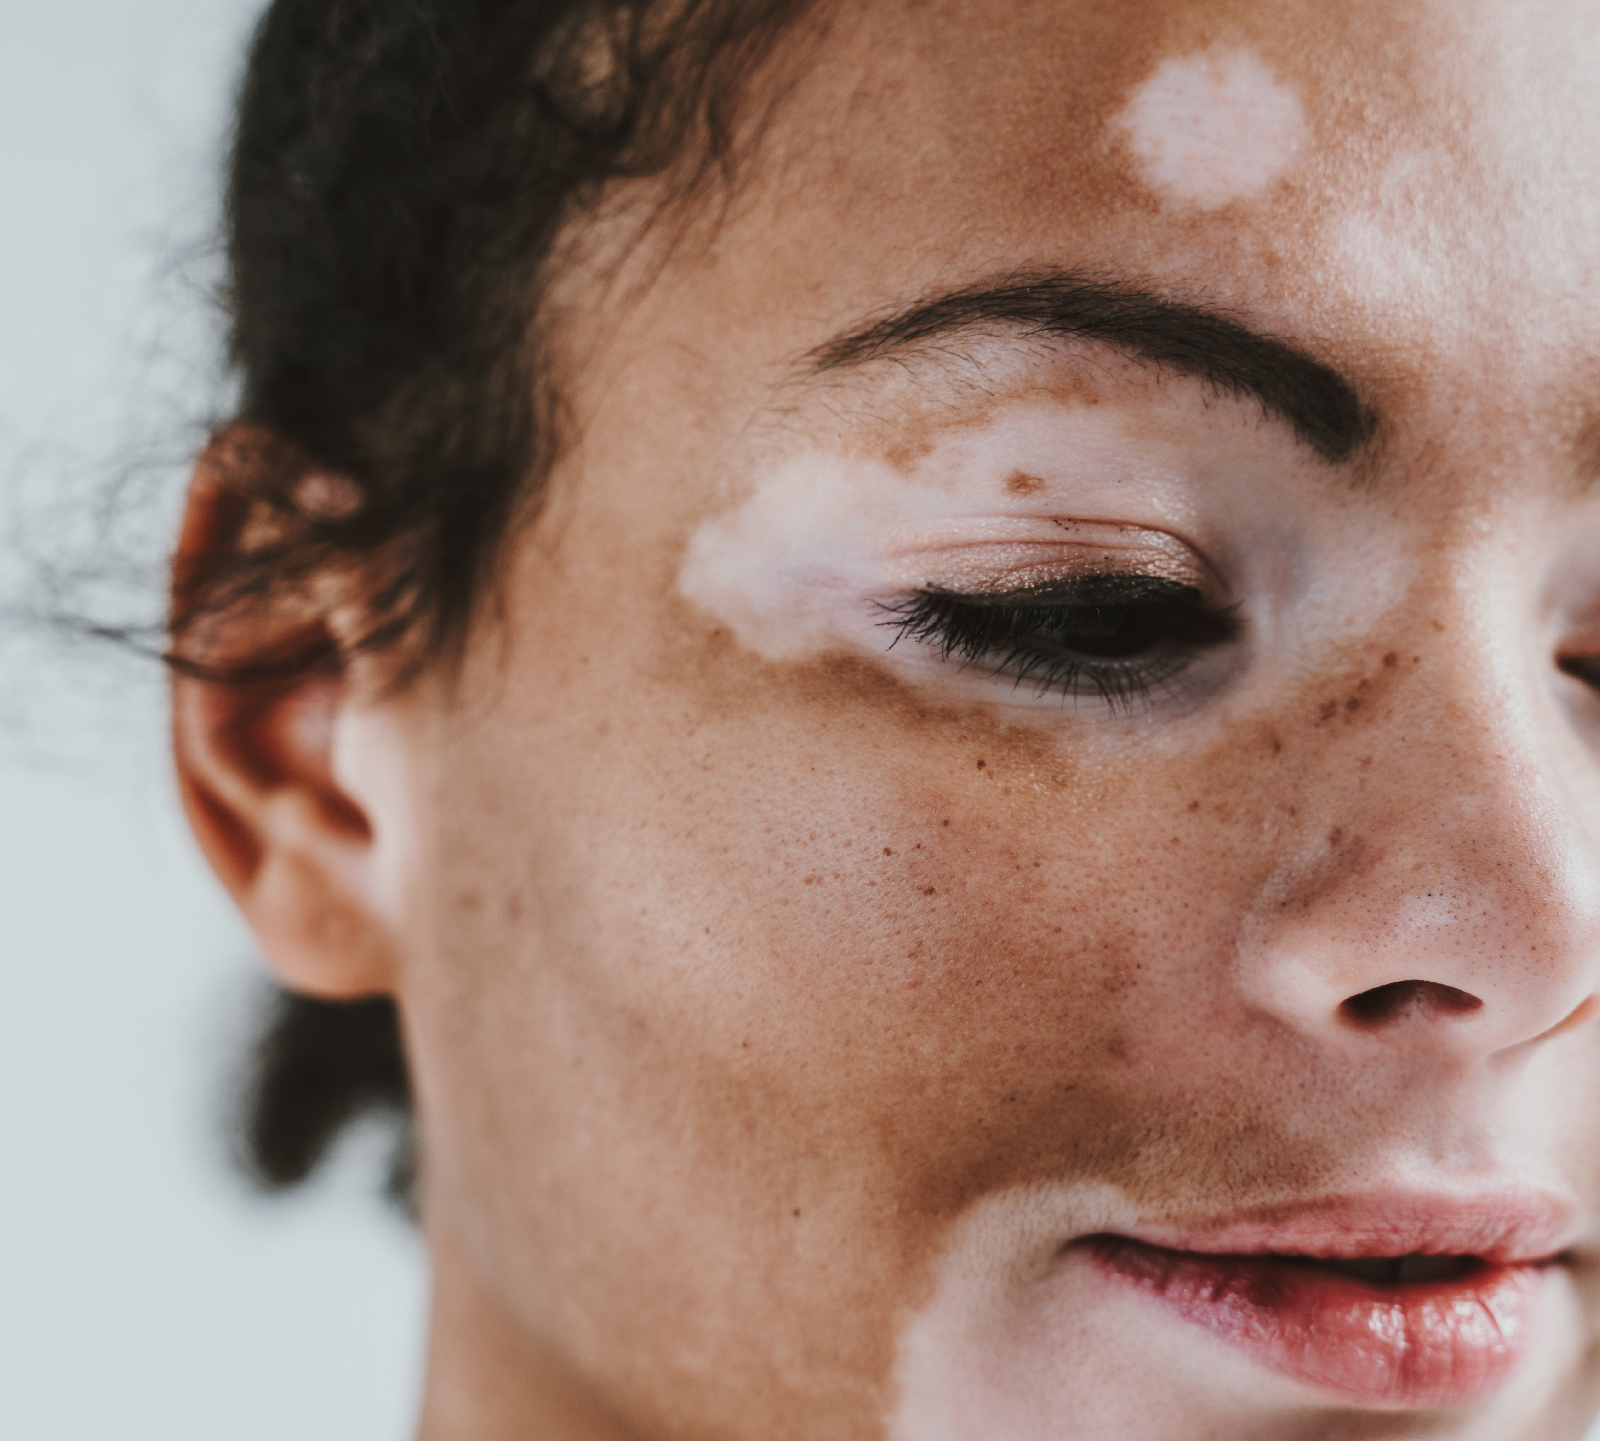 Onde está a representatividade de pessoas com vitiligo? — Gama Revista